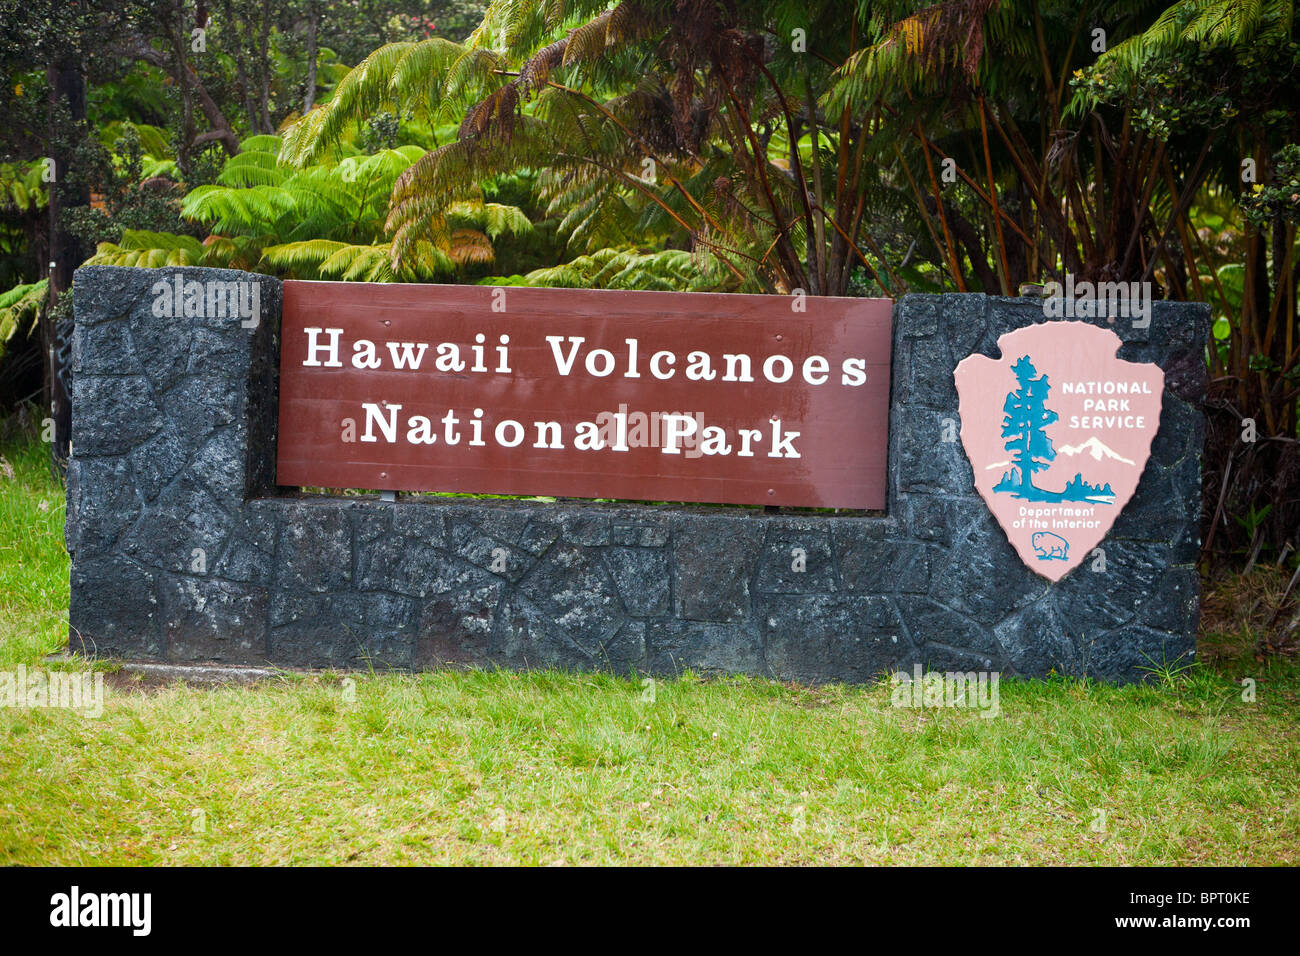 Hawaiʻi-Volcanoes-Nationalpark Zeichen, The Big Island, Hawaii, Vereinigte Staaten von Amerika Stockfoto